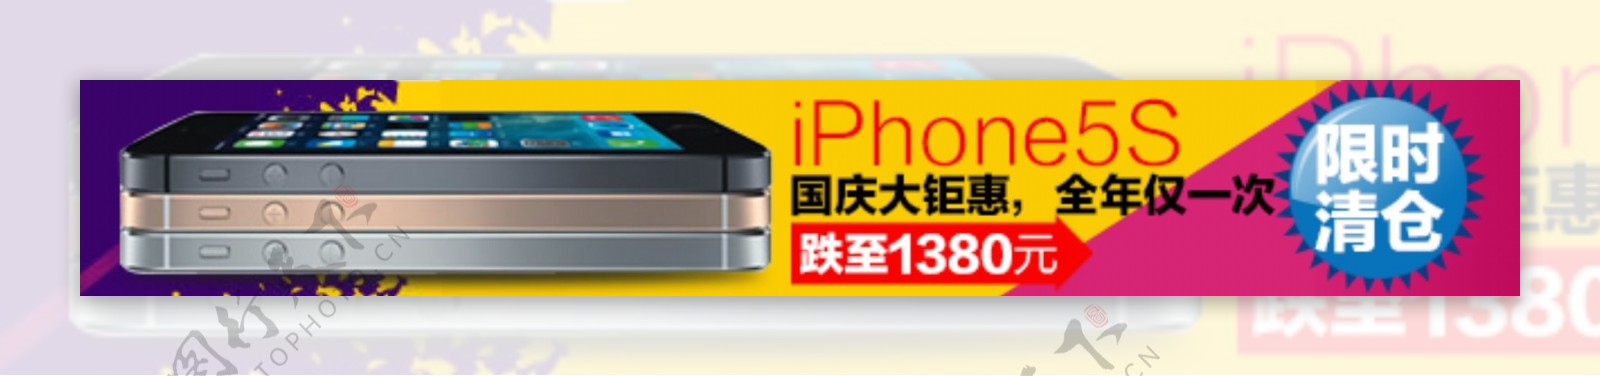 苹果5s促销海报图片国庆促销iPhone5s